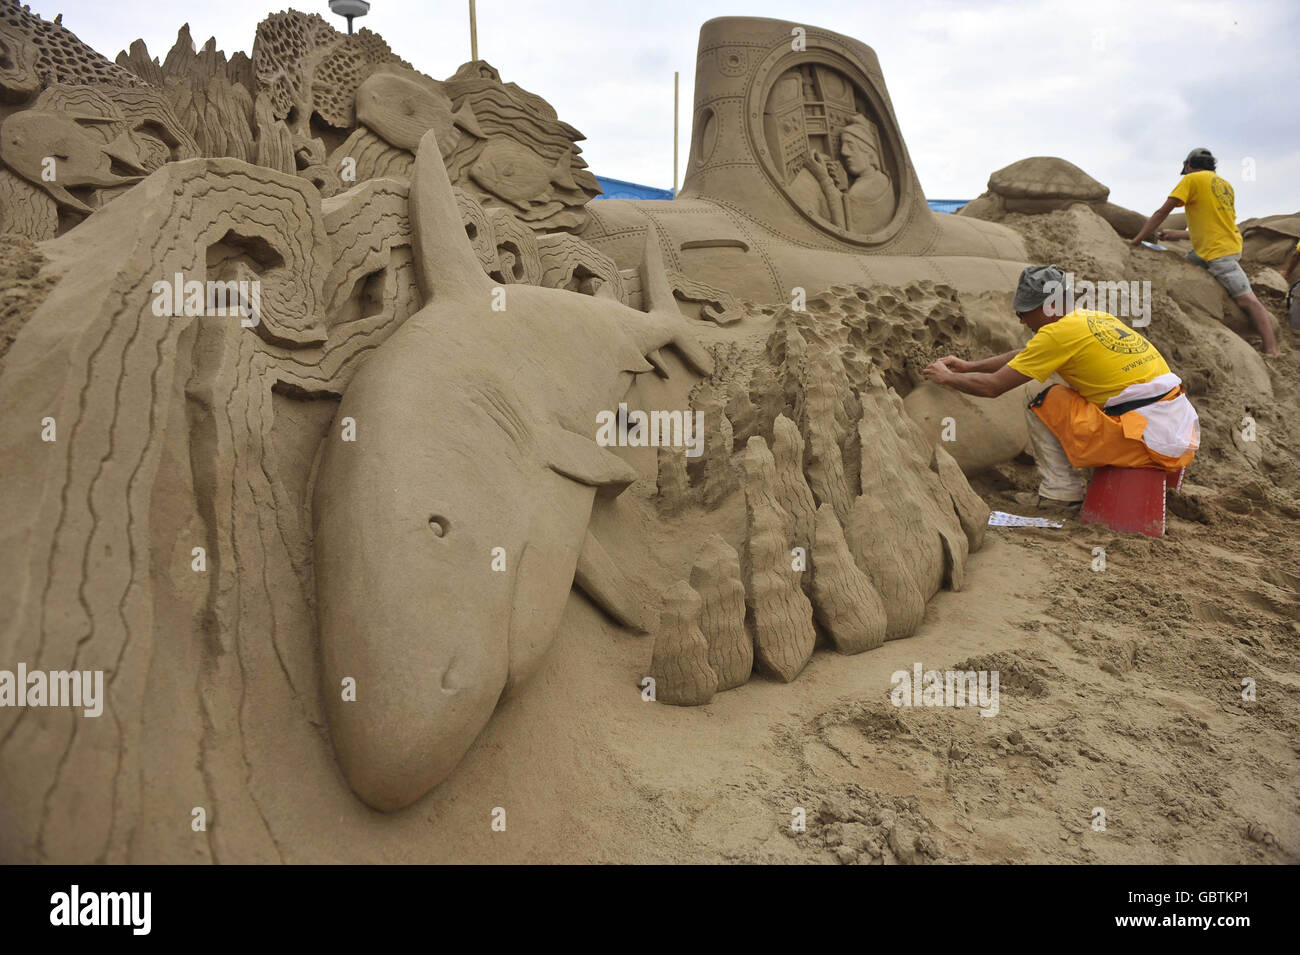 Festival de sculptures de sable Banque D'Images